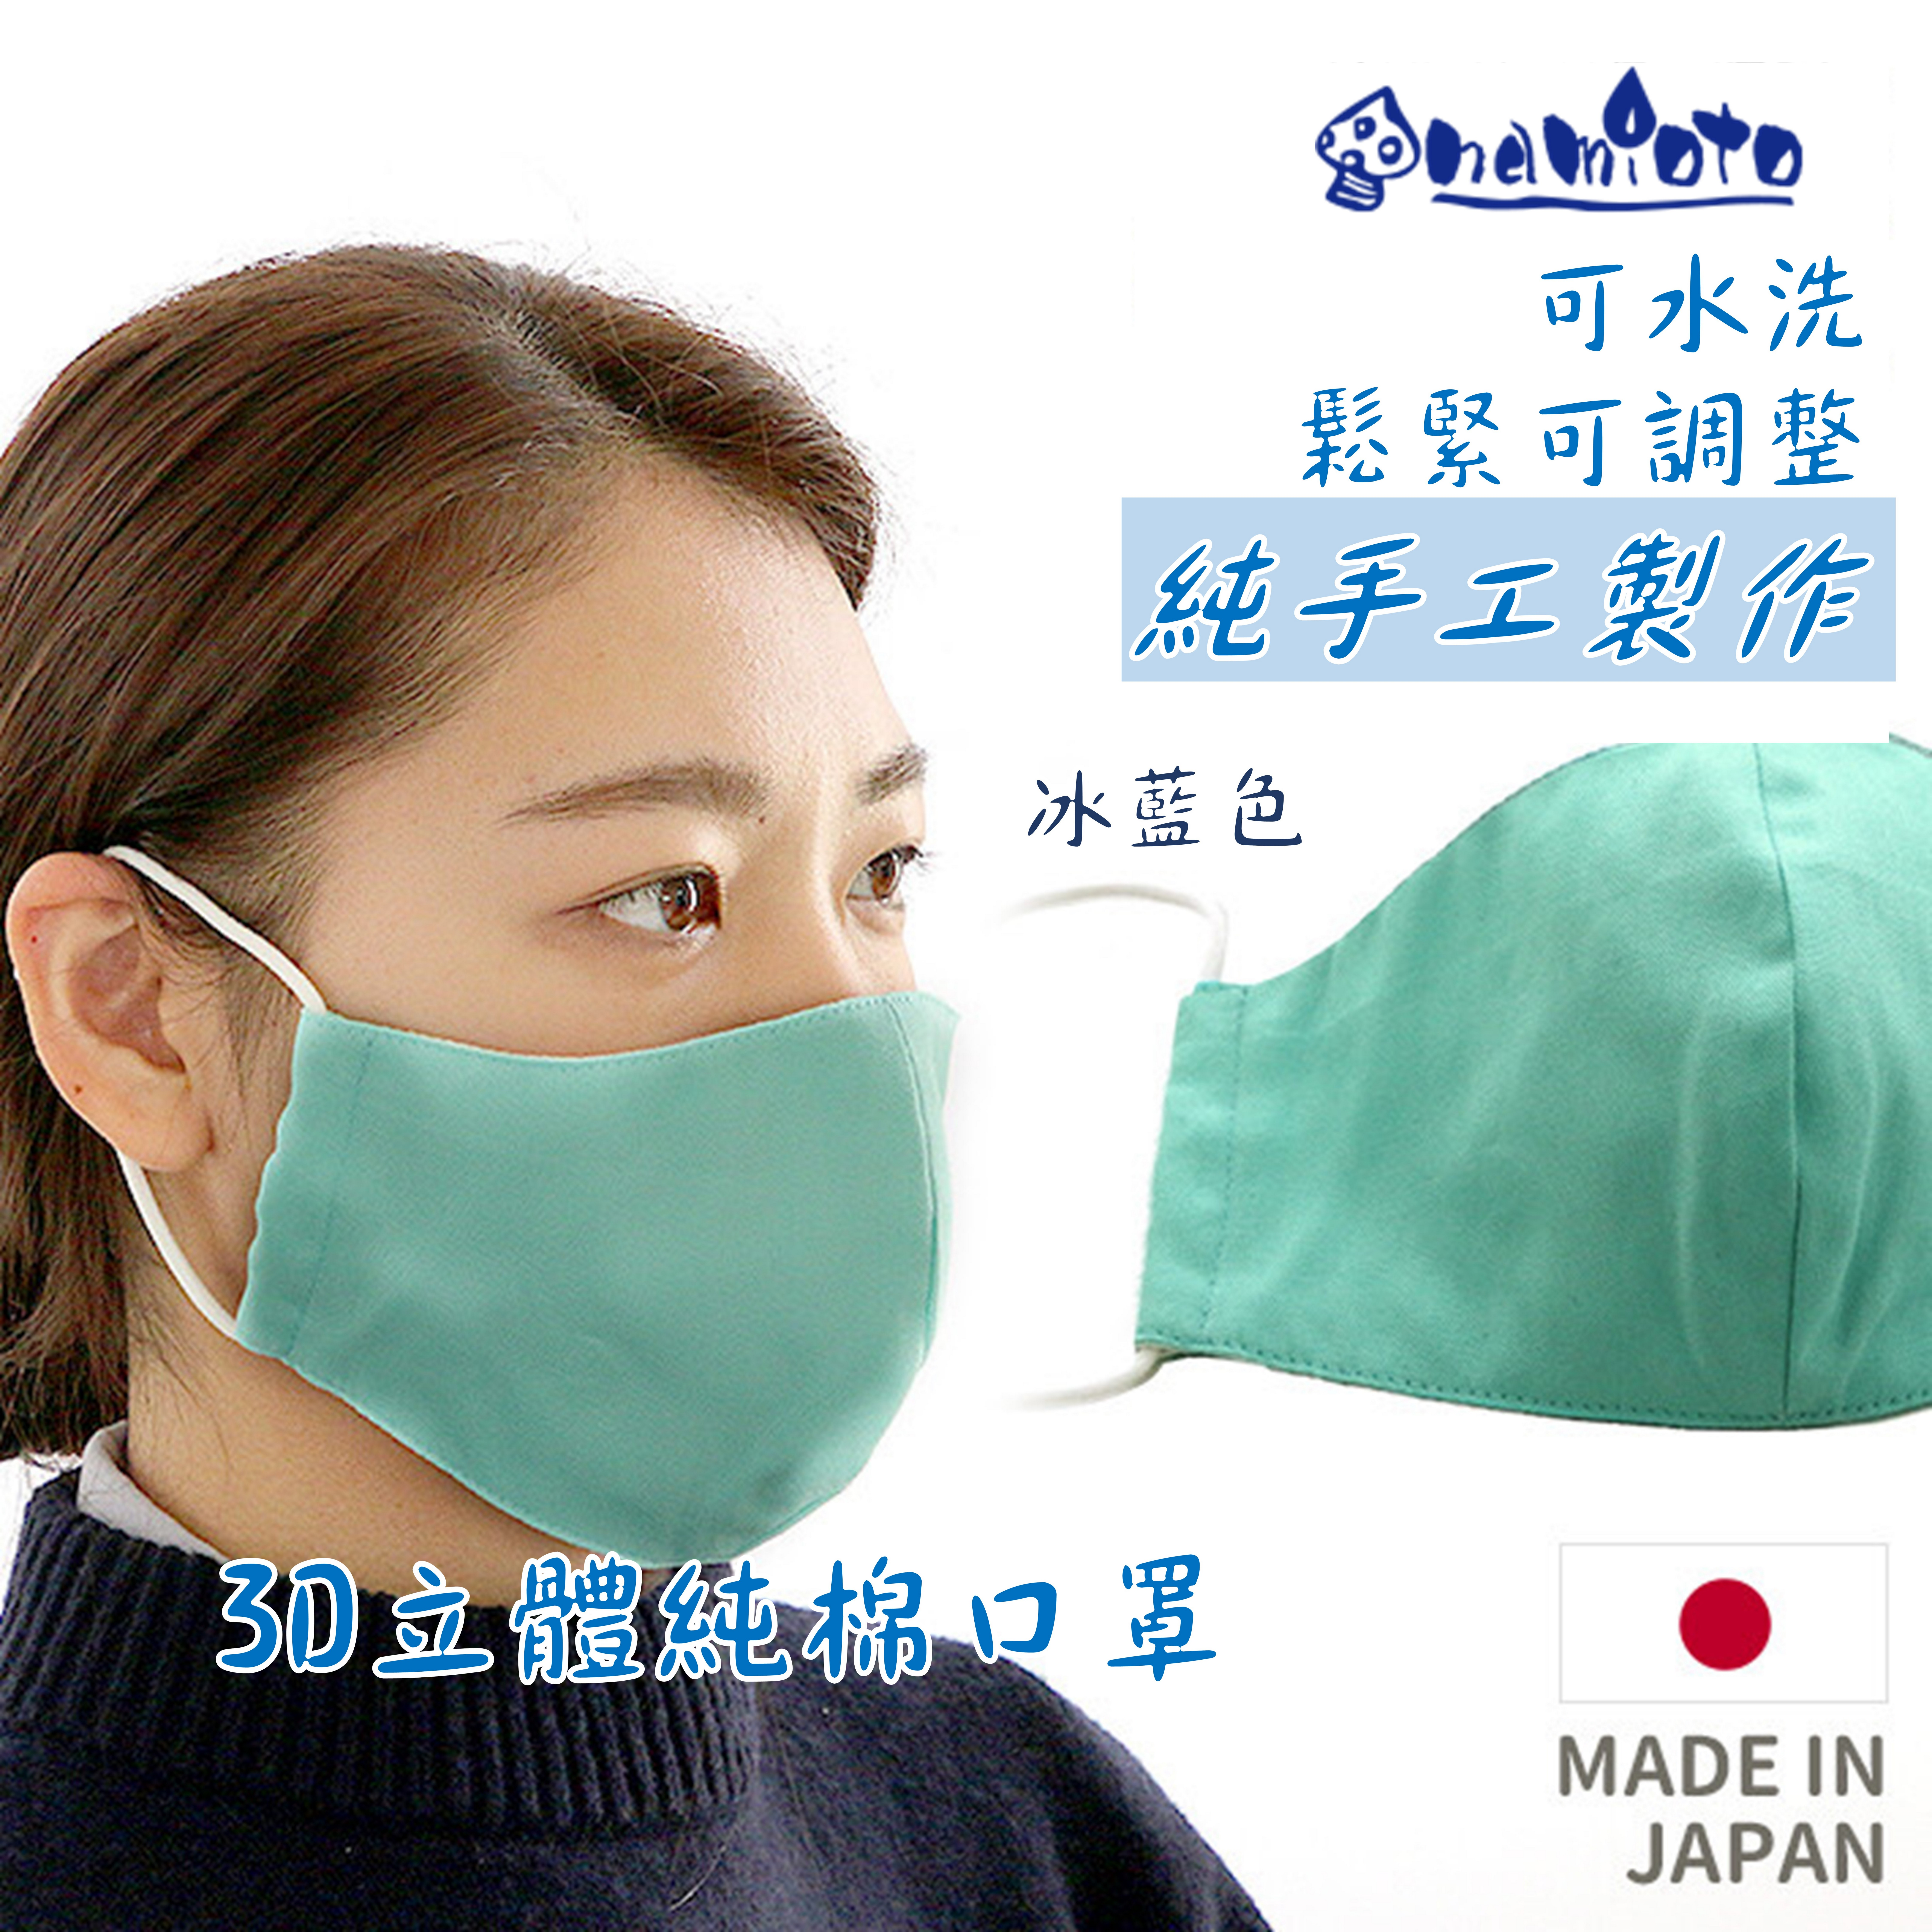 日本 namioto 純手工純棉雙層口罩 3D 立體口罩 冰藍色 防曬吸汗高透氣 口罩